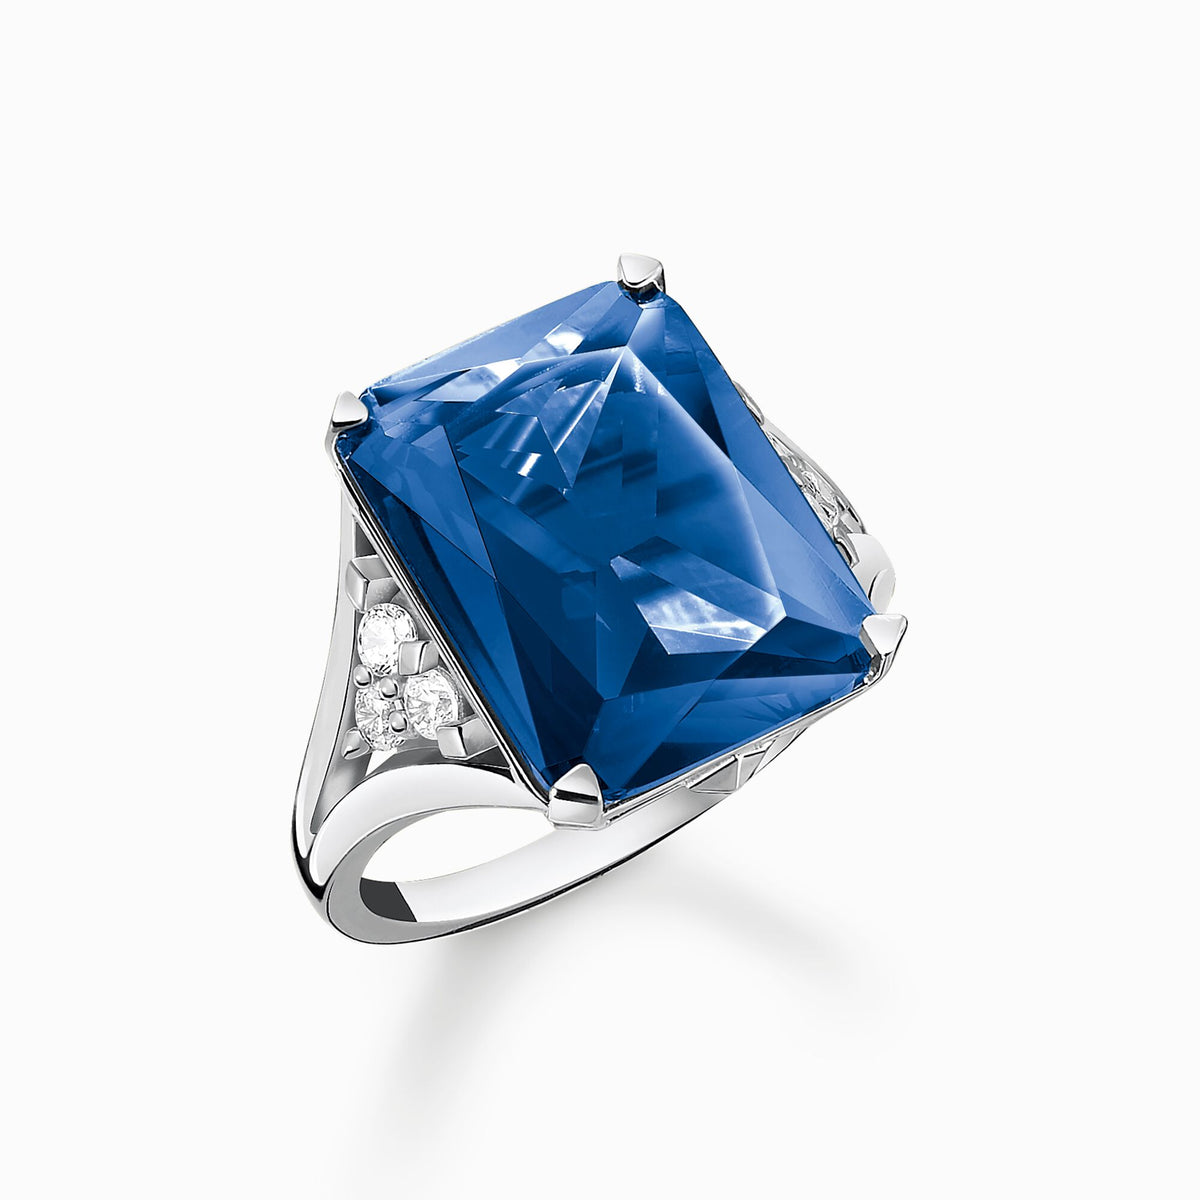 Anel Cristal do Oceano Azul - Prata 925 da arquétiposhop em promoção em até 12x